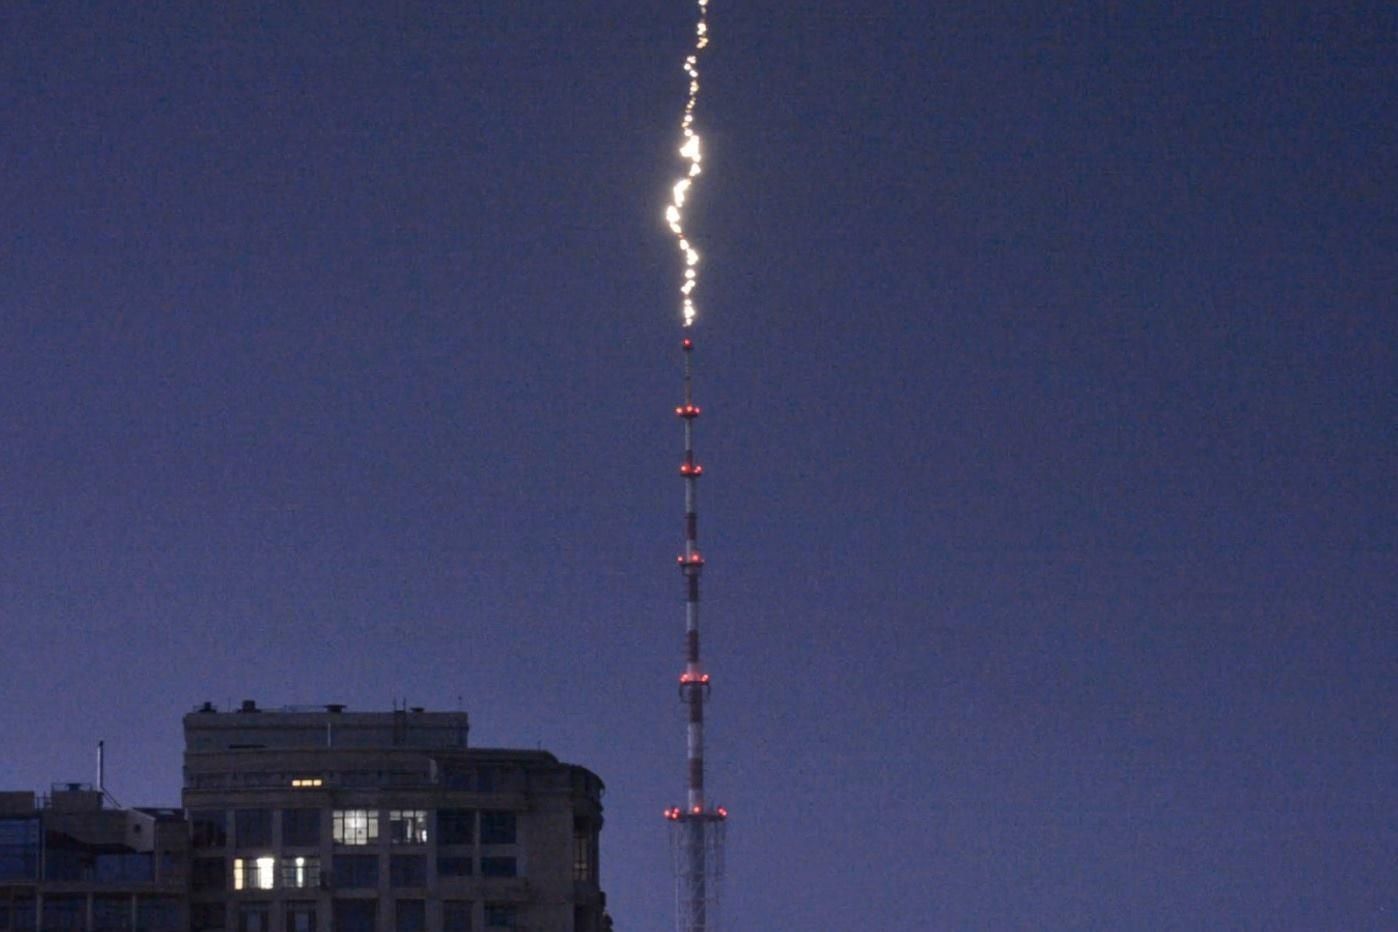 Негода в Києві: у мережі опублікували момент влучання блискавки у Дорогожицьку телевежу